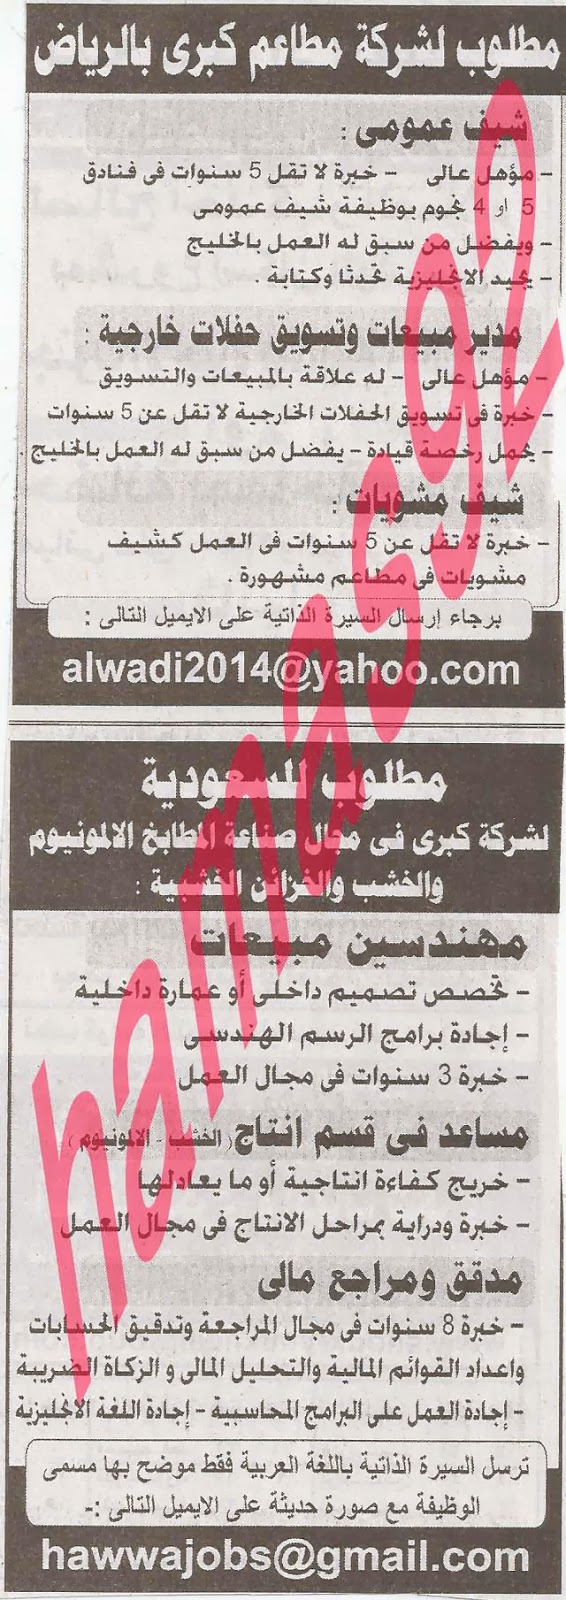 وظائف دول الخليج بجريدة الاهرام الجمعة 25-10-2013 31